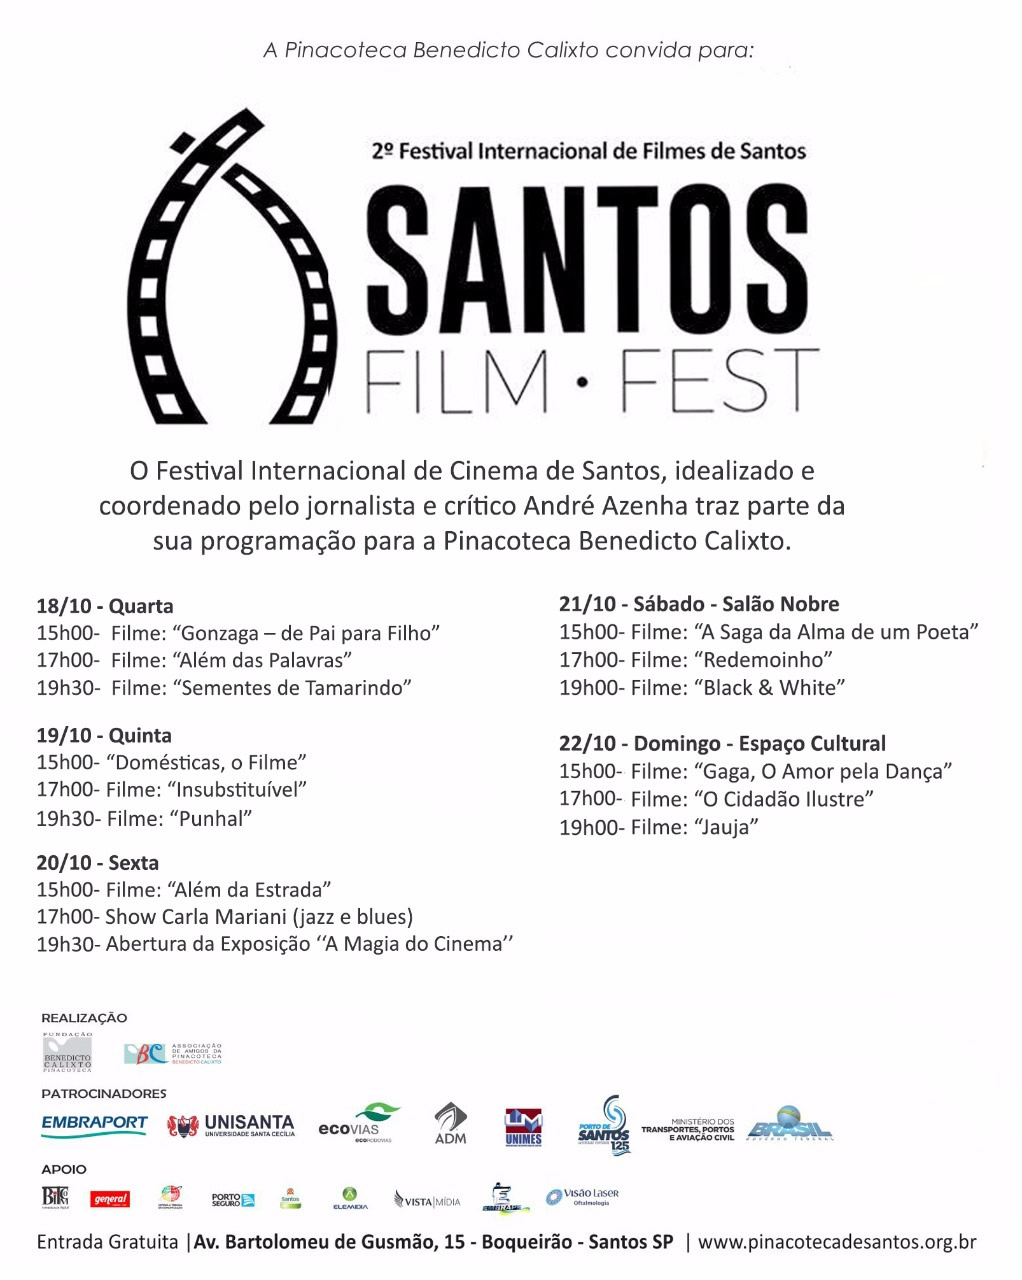 SANTOS FILM FEST